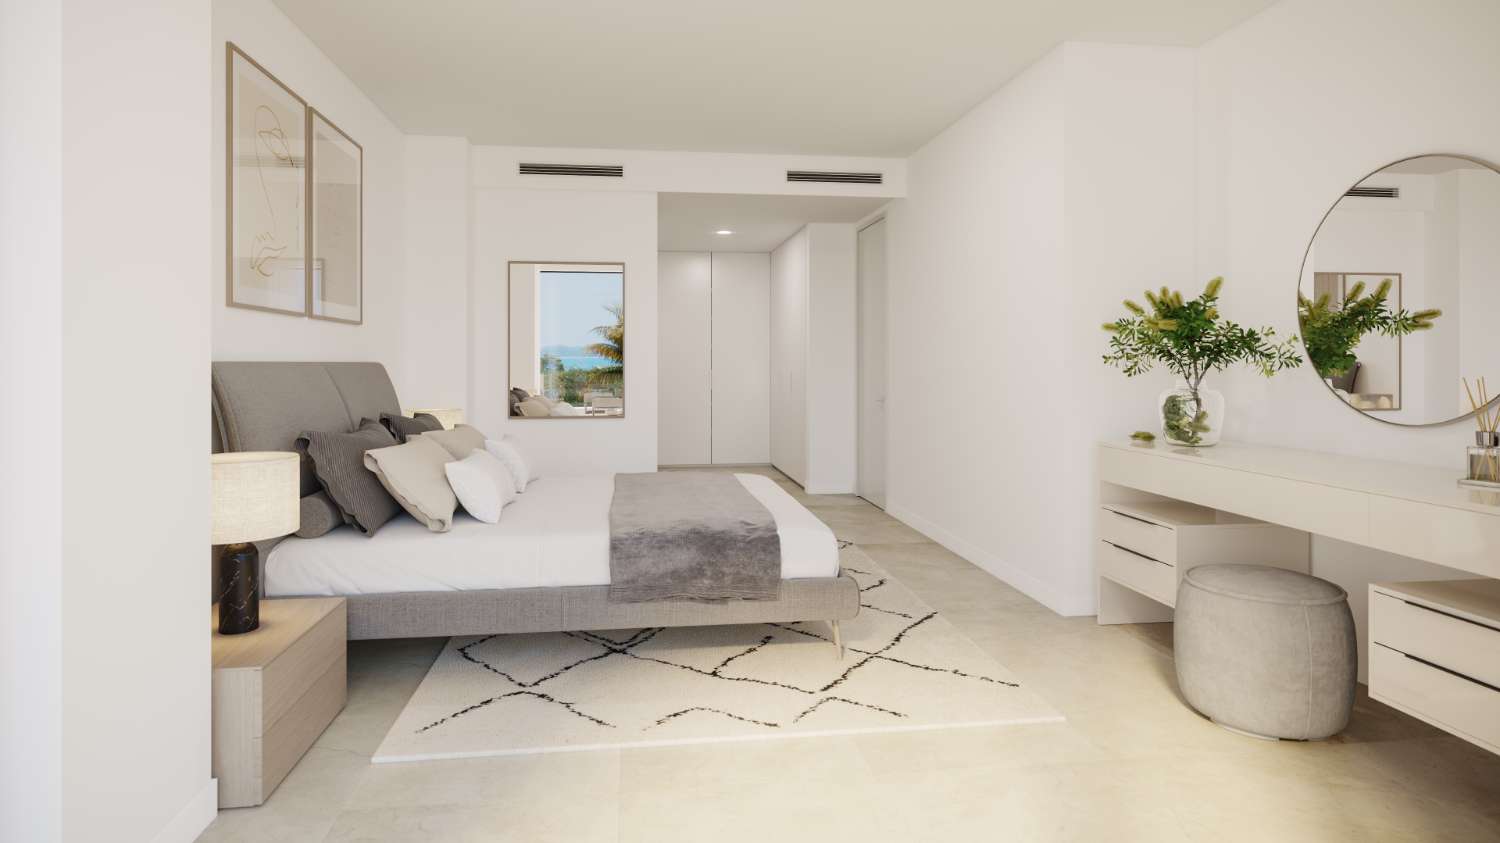 Lujoso apartamento en Marbella, planta baja con jardín privado en urbanización en Primera línea de Campo de Golf